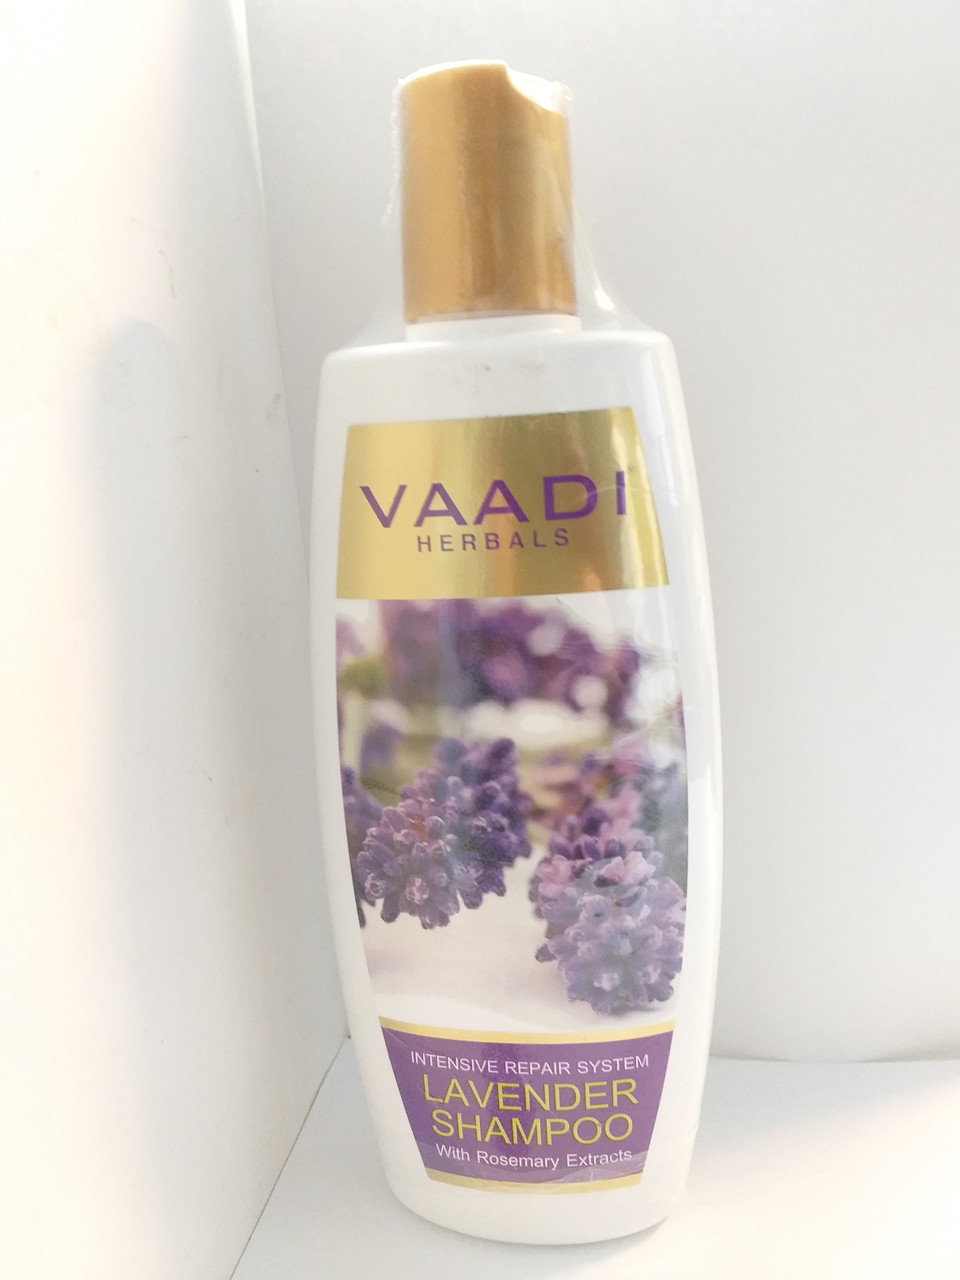 Аюрведический шампунь с лавандой и розмарином, 350 мл, для поврежденных волос, Vaadi,Lavender shampoo, фото 1